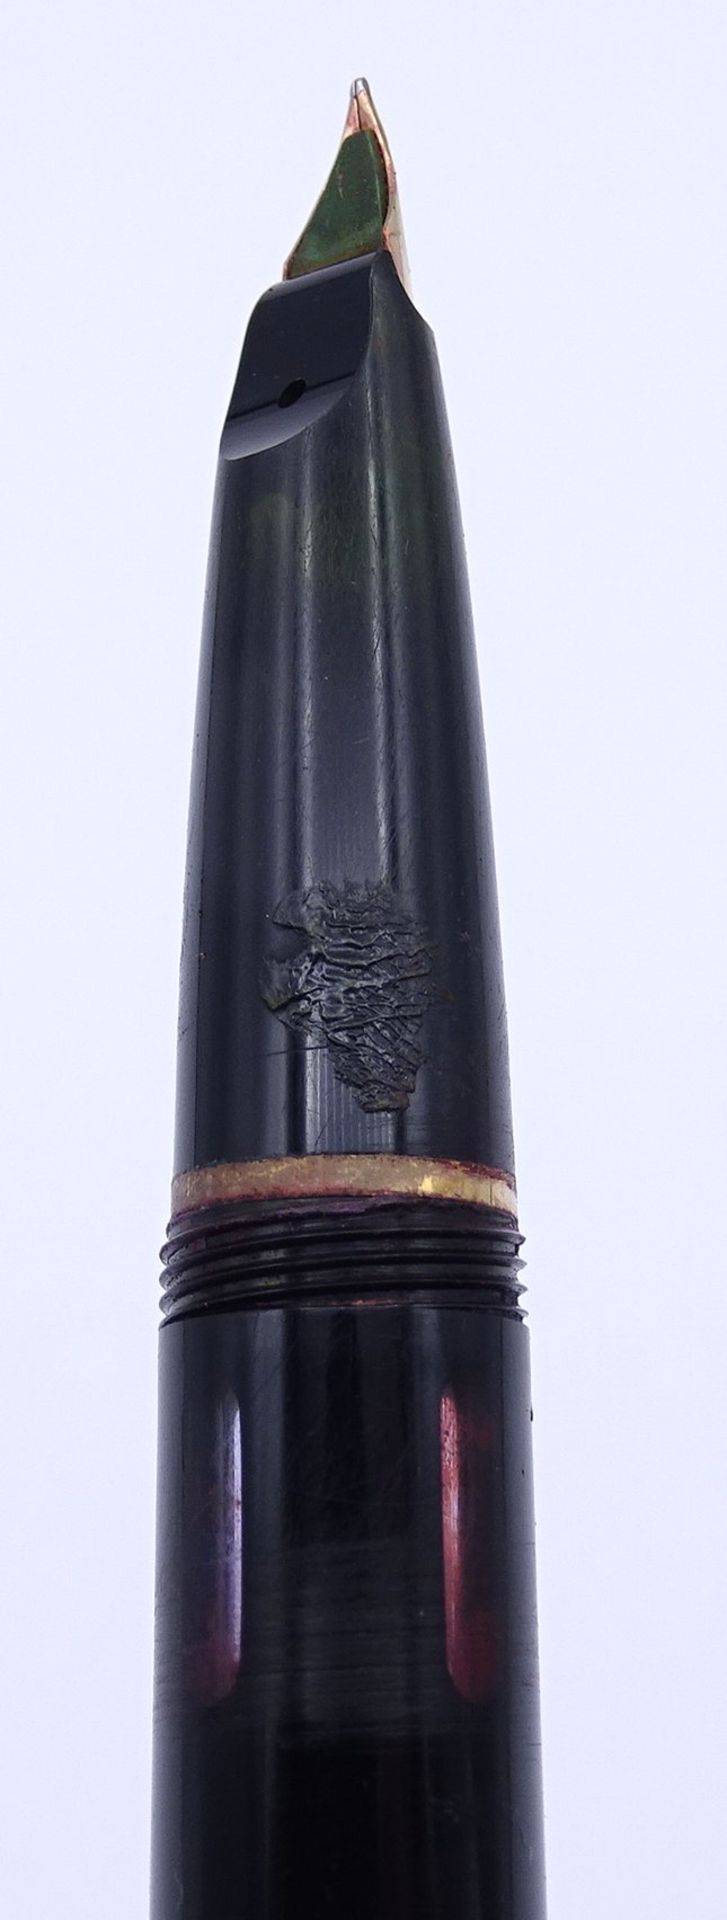 Lamy 27 Füller, GG Feder 0.585, EF, L. 13,3cm, Alters- und Gebrauchsspuren - Image 4 of 8